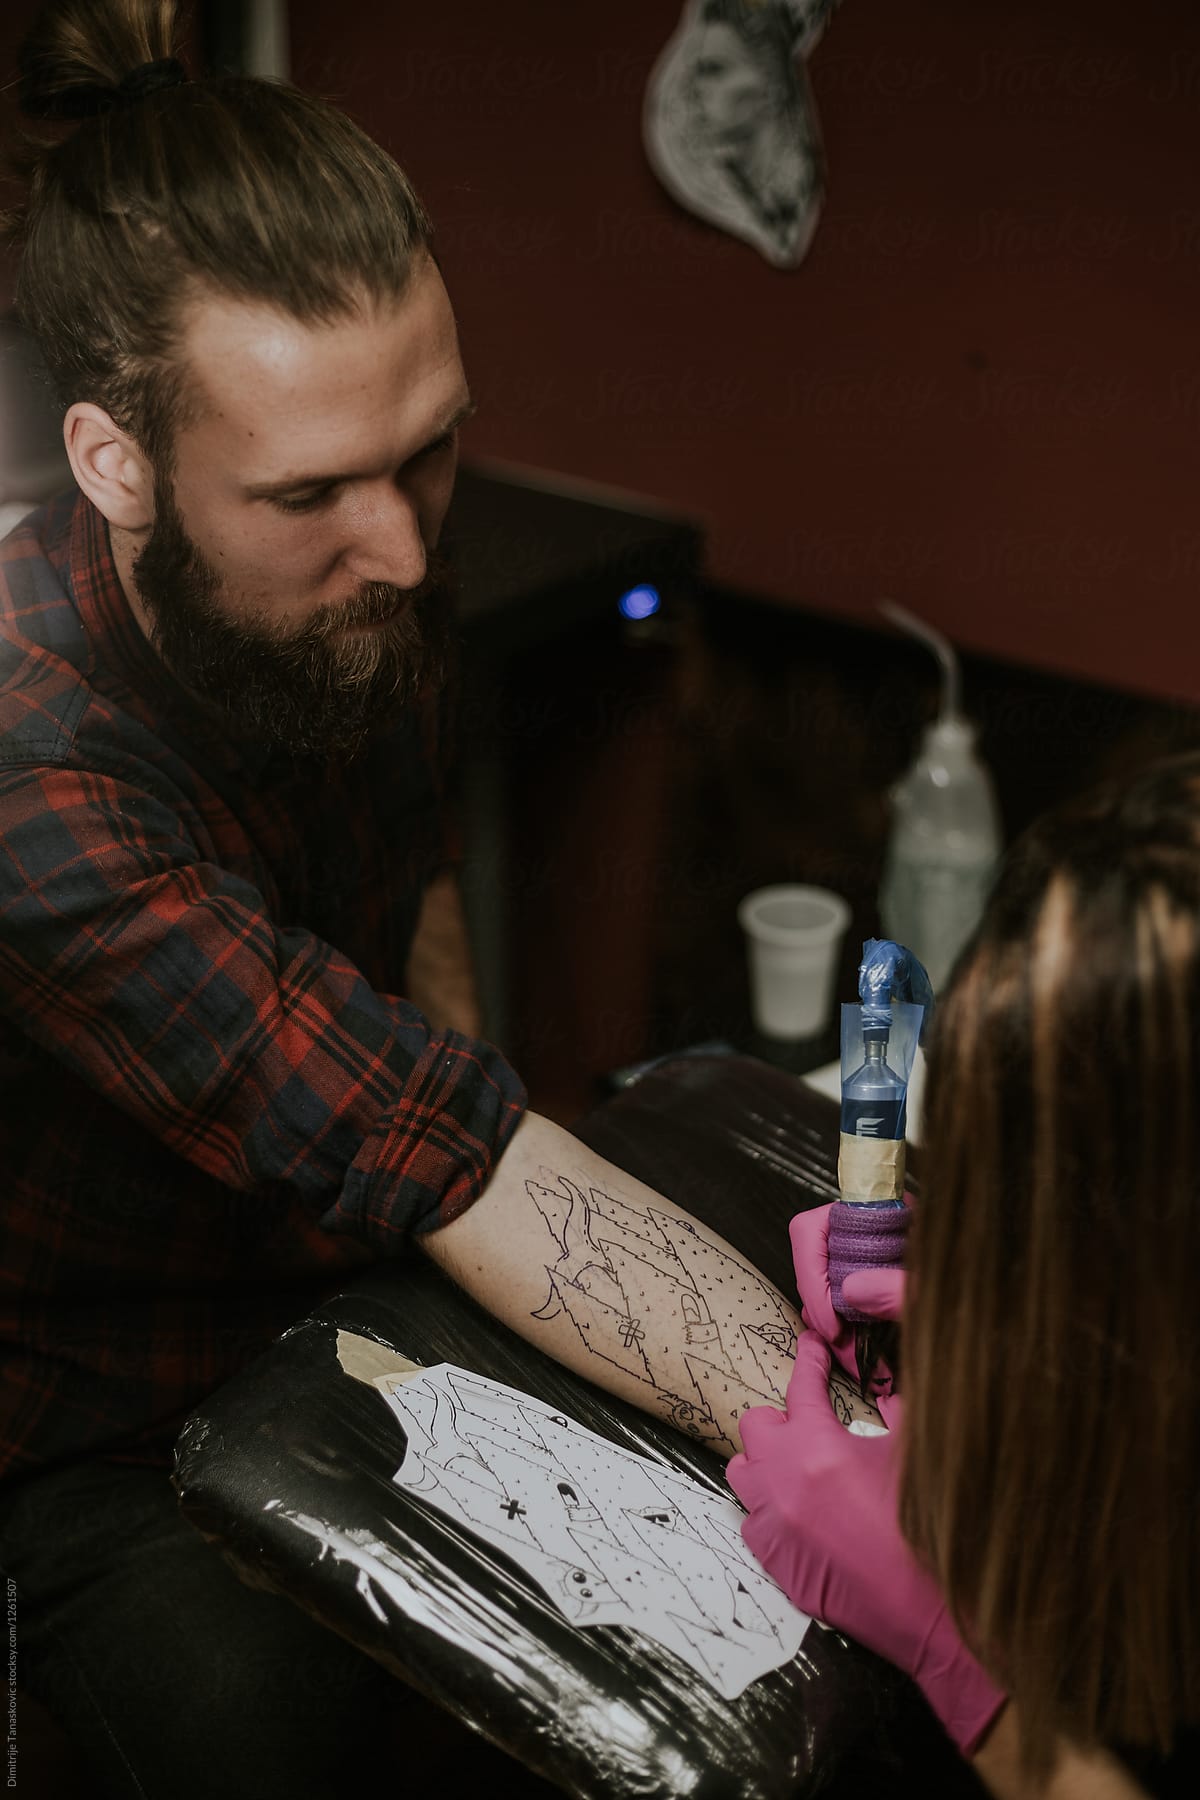 Man in tattoo studio